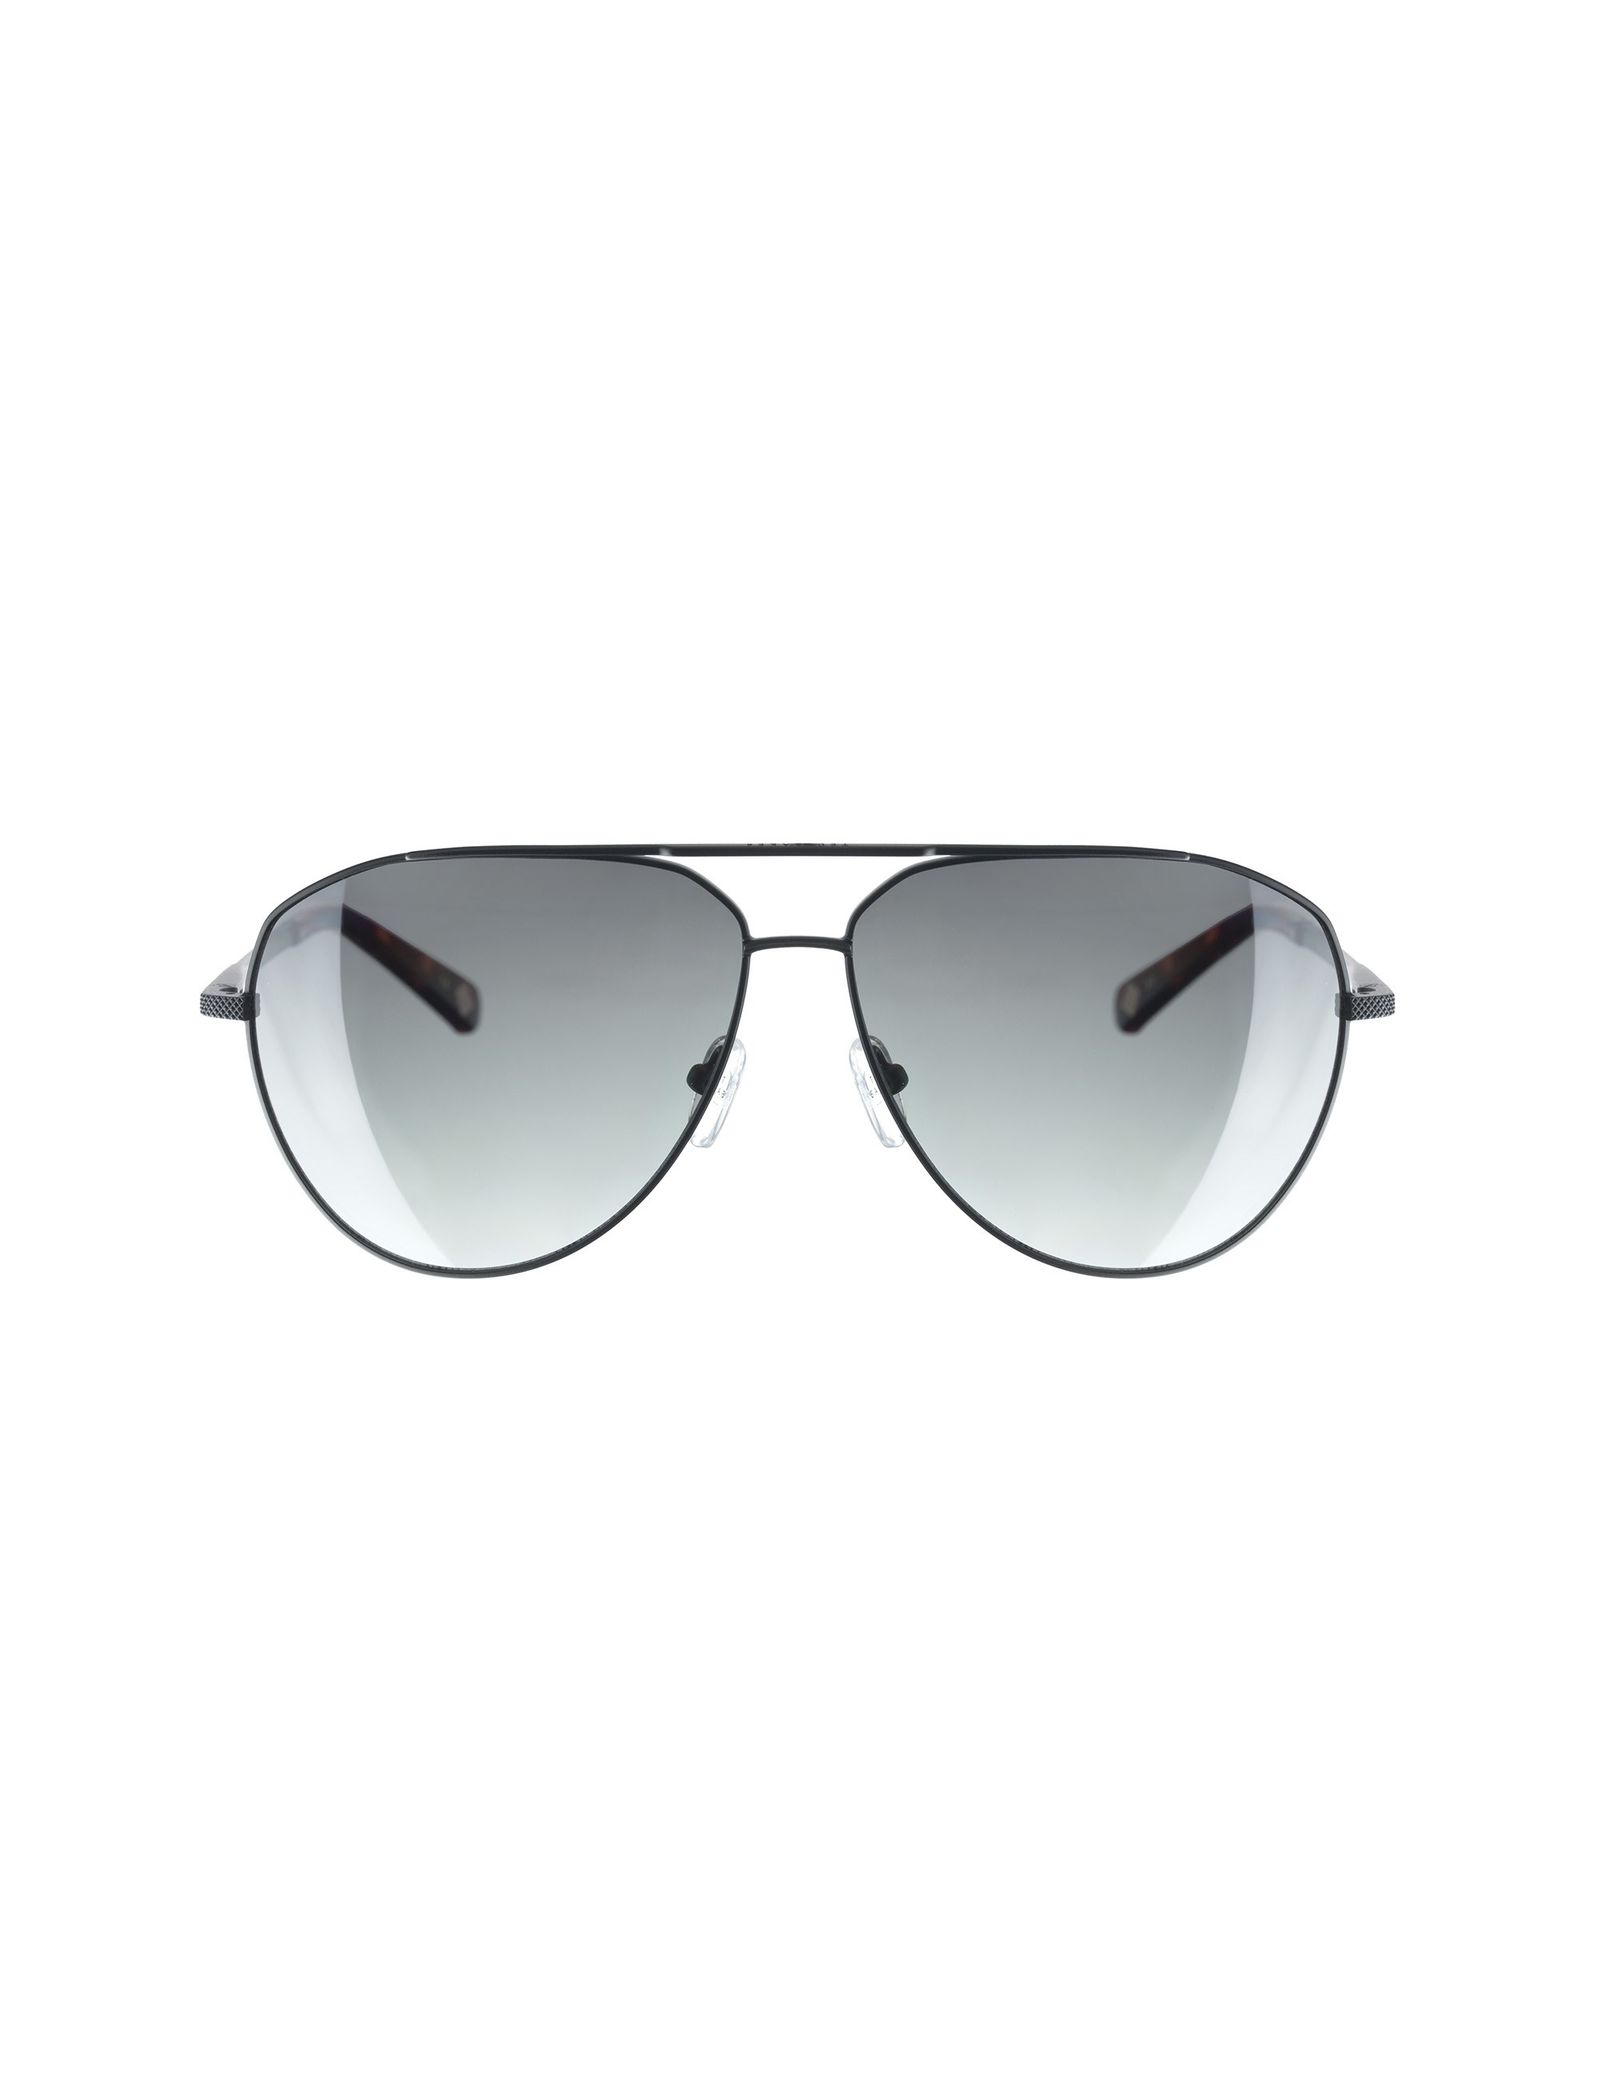 عینک آفتابی خلبانی بزرگسال - تد بیکر - مشکي - 1